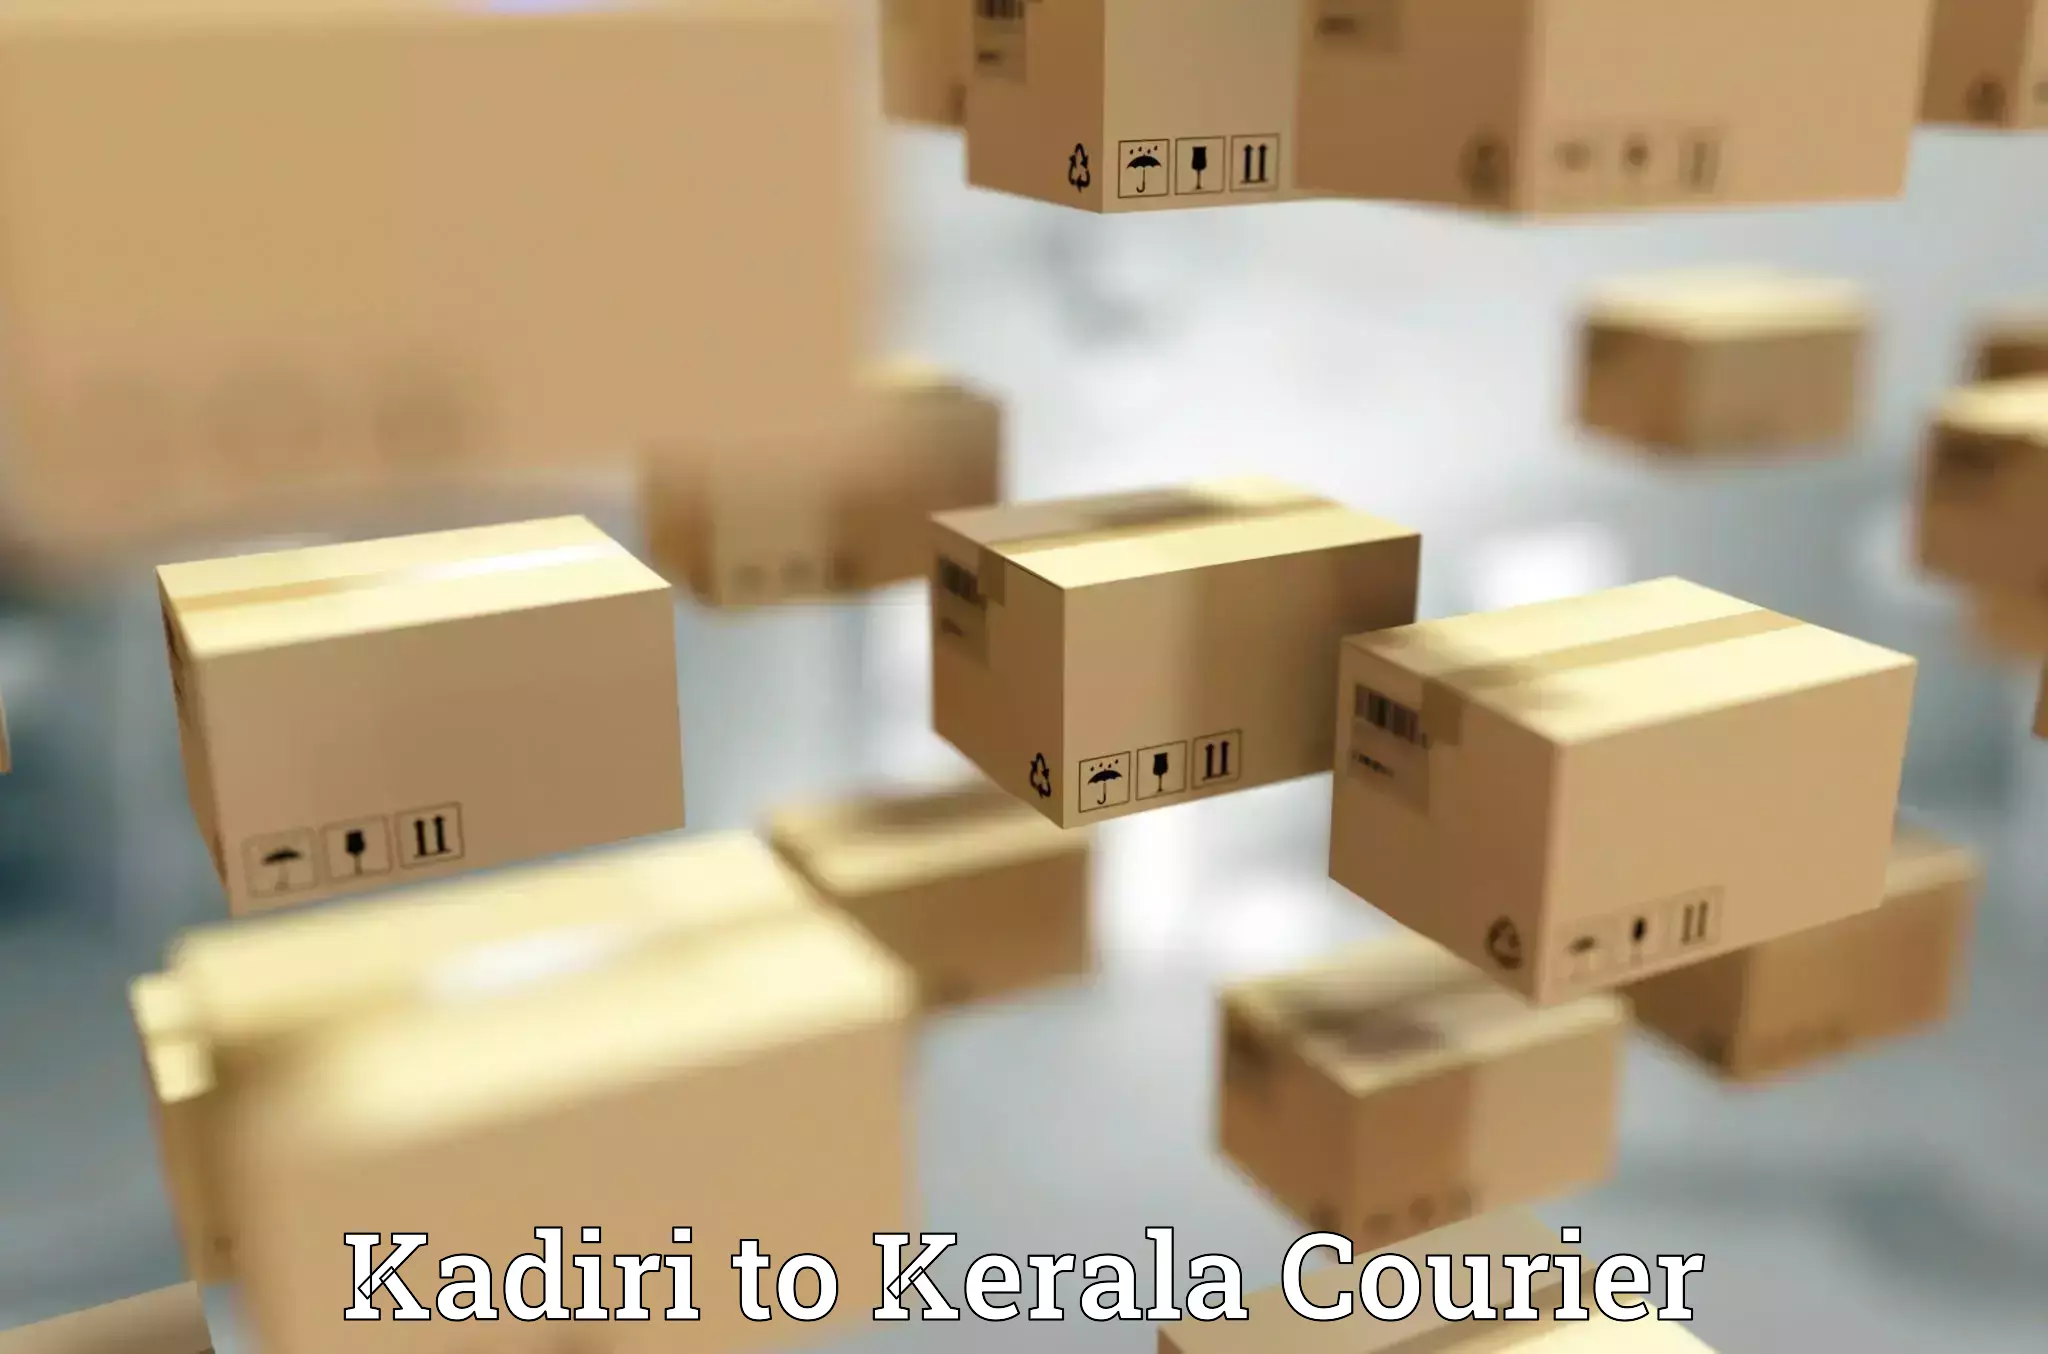 Smart shipping technology Kadiri to Parippally